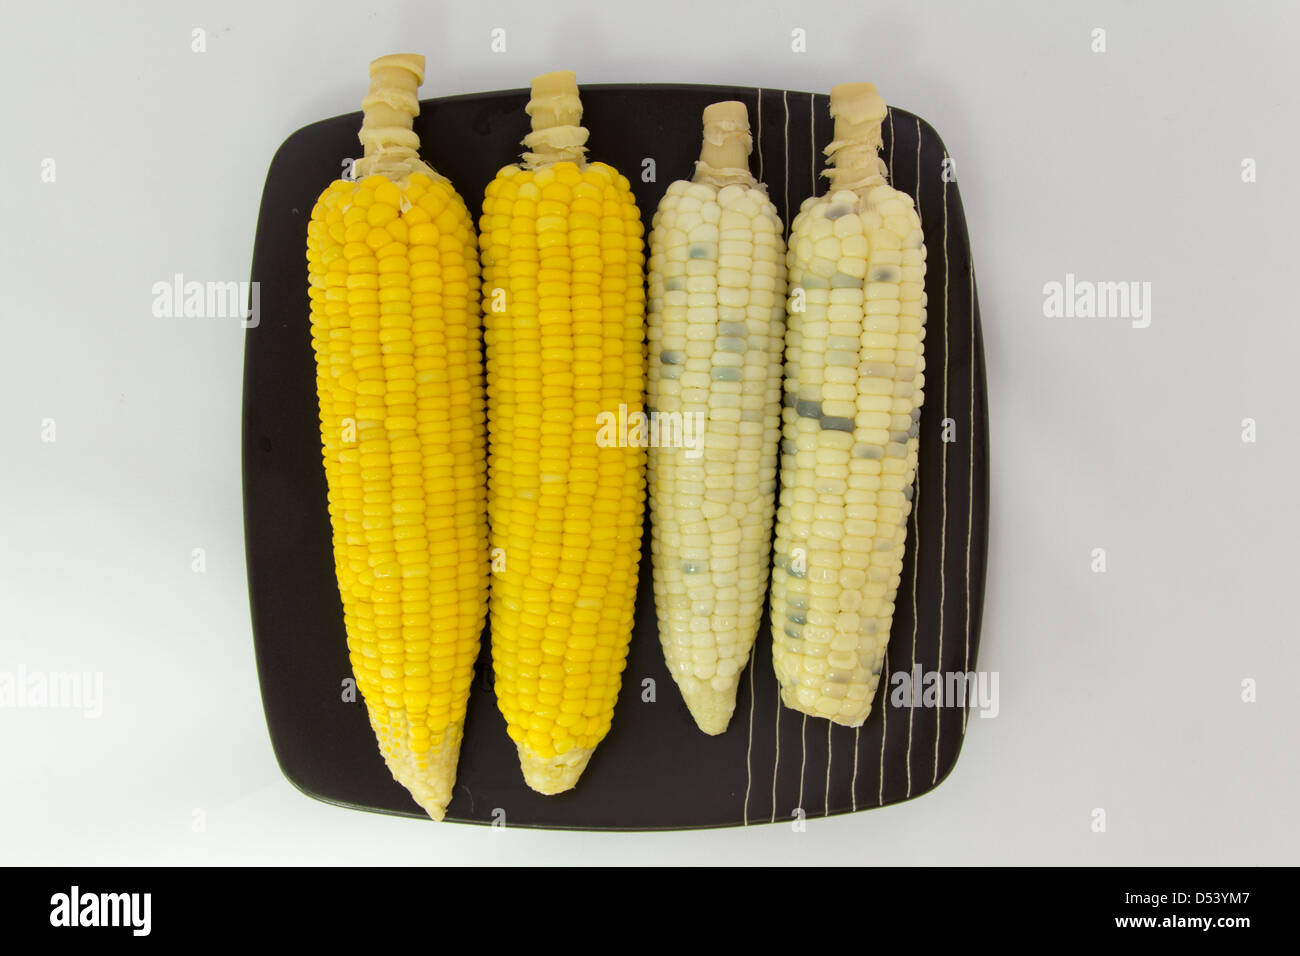 Le maïs blanc et le maïs jaune sur la plaque Banque D'Images